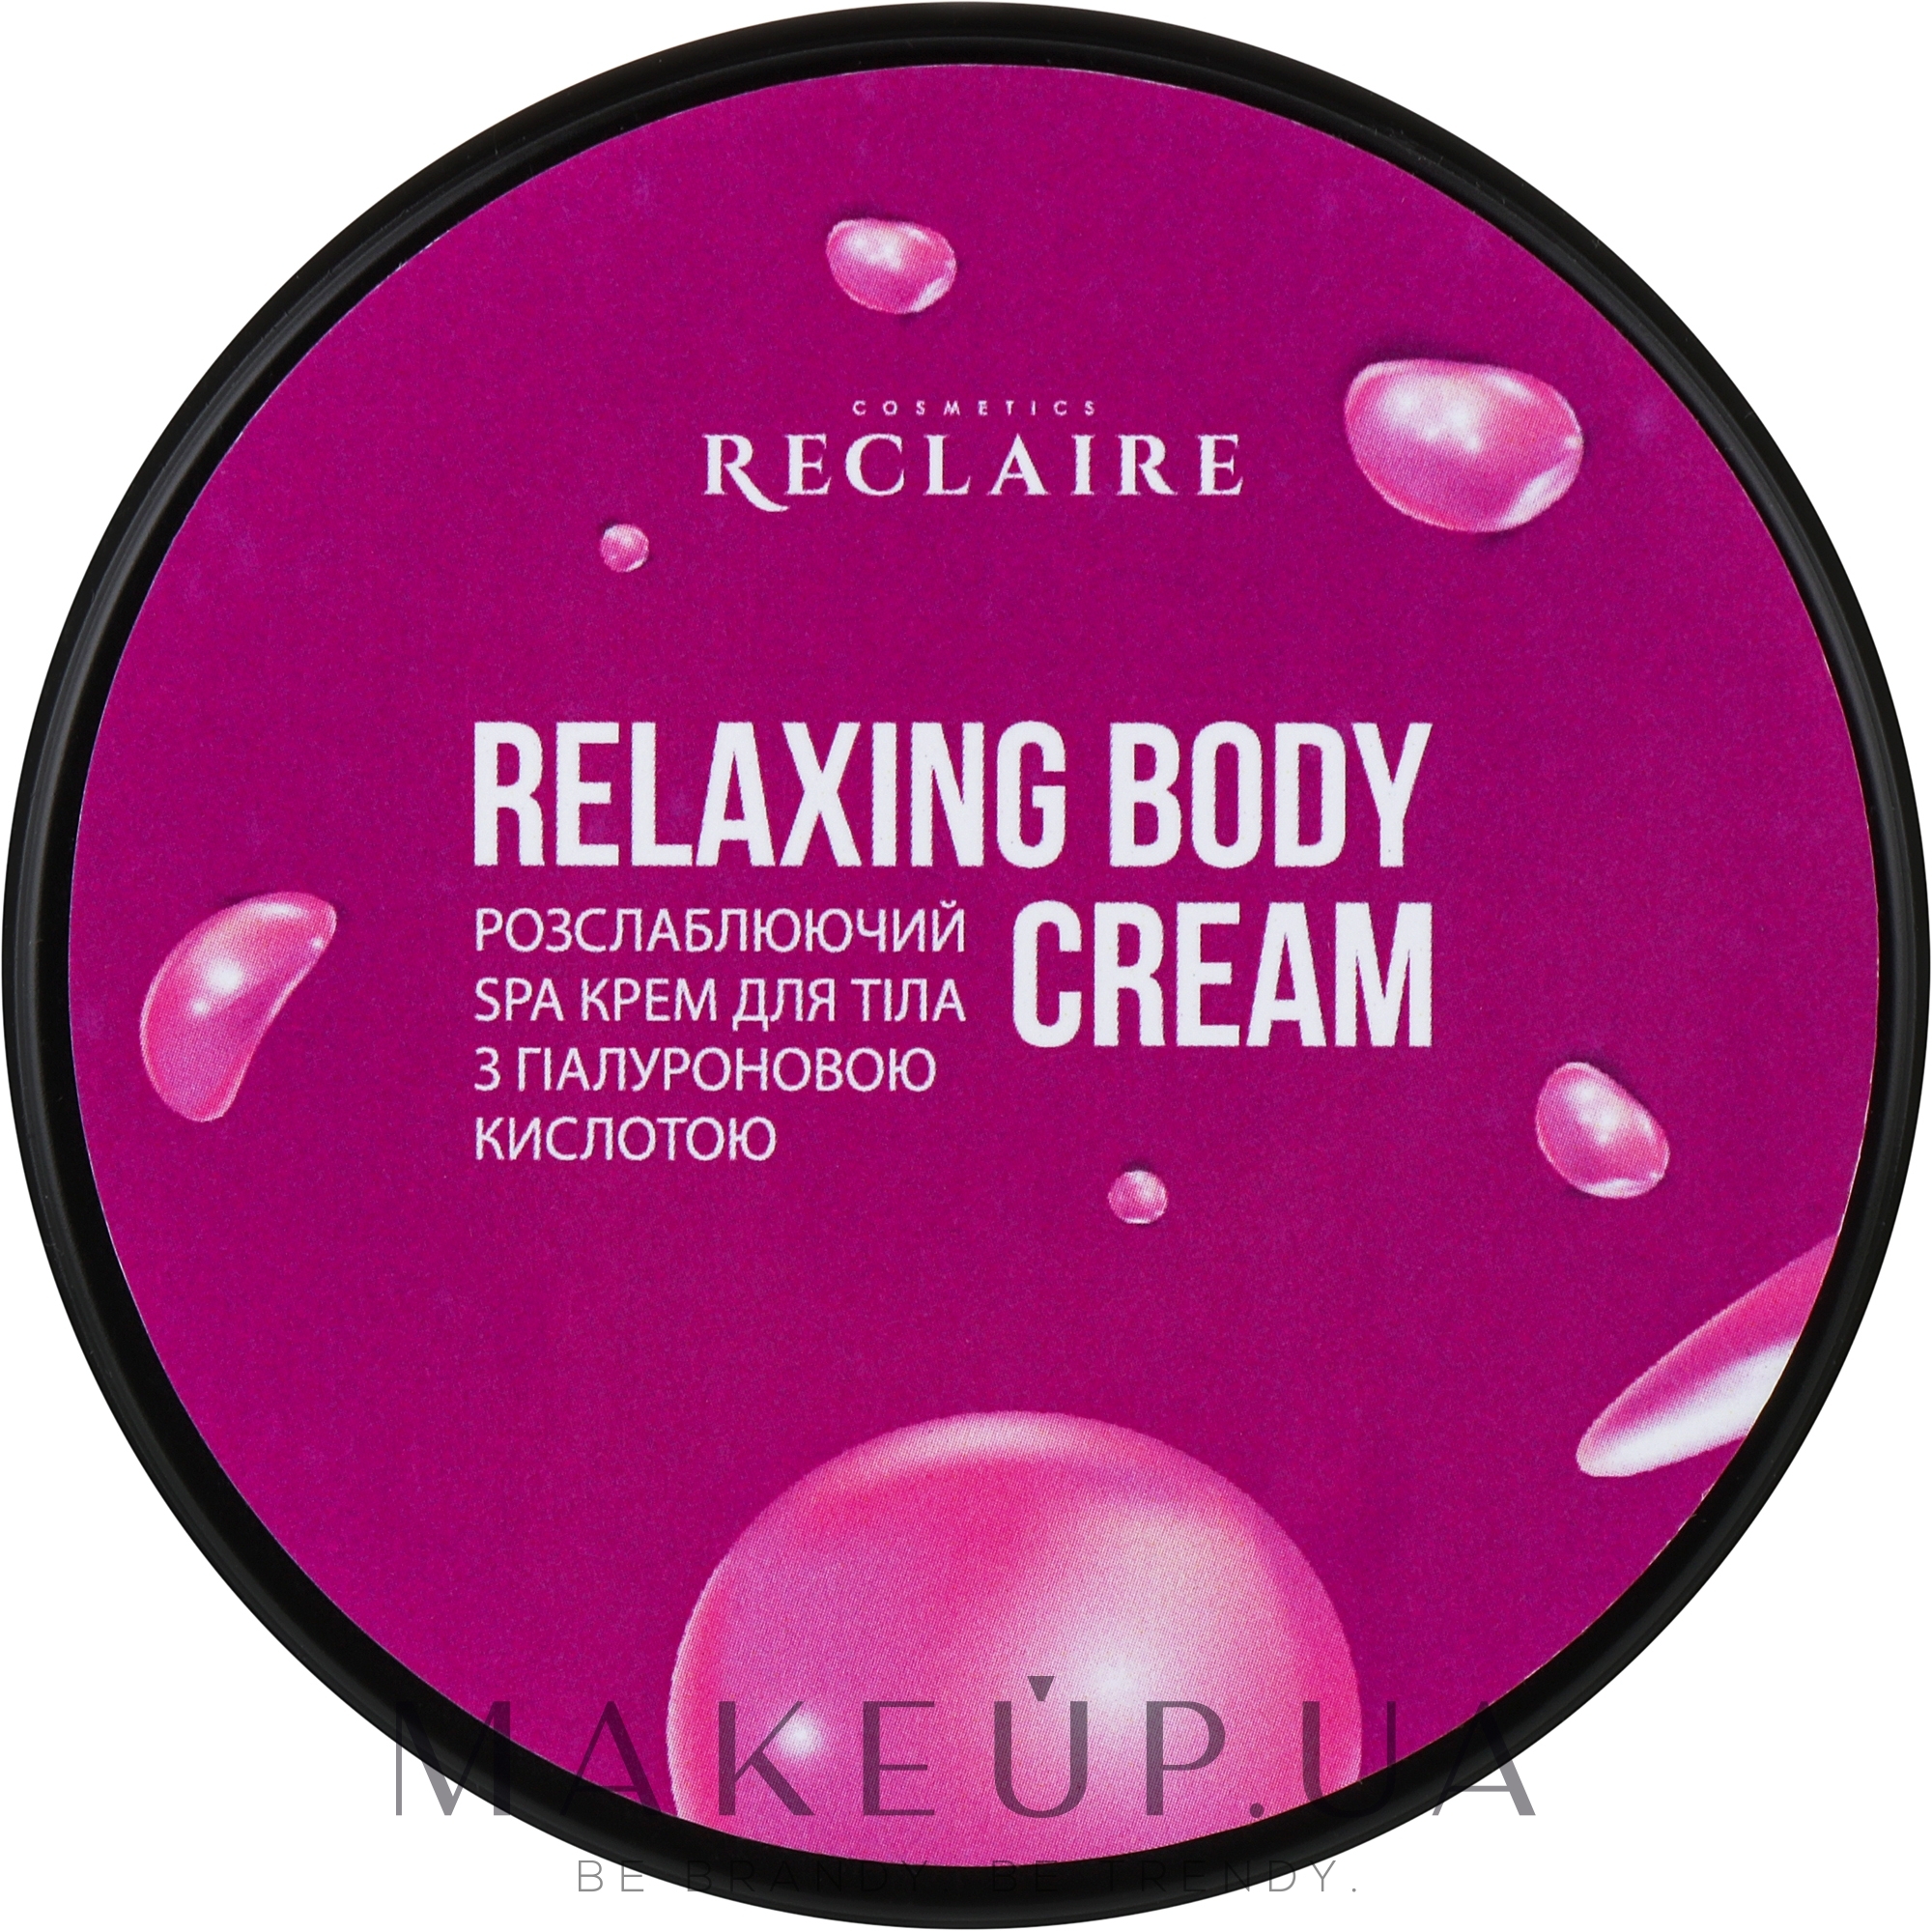 Розслаблюючий Spa крем для тіла з гіалуроновою кислотою - Reclaire Relaxing Body Cream — фото 200ml